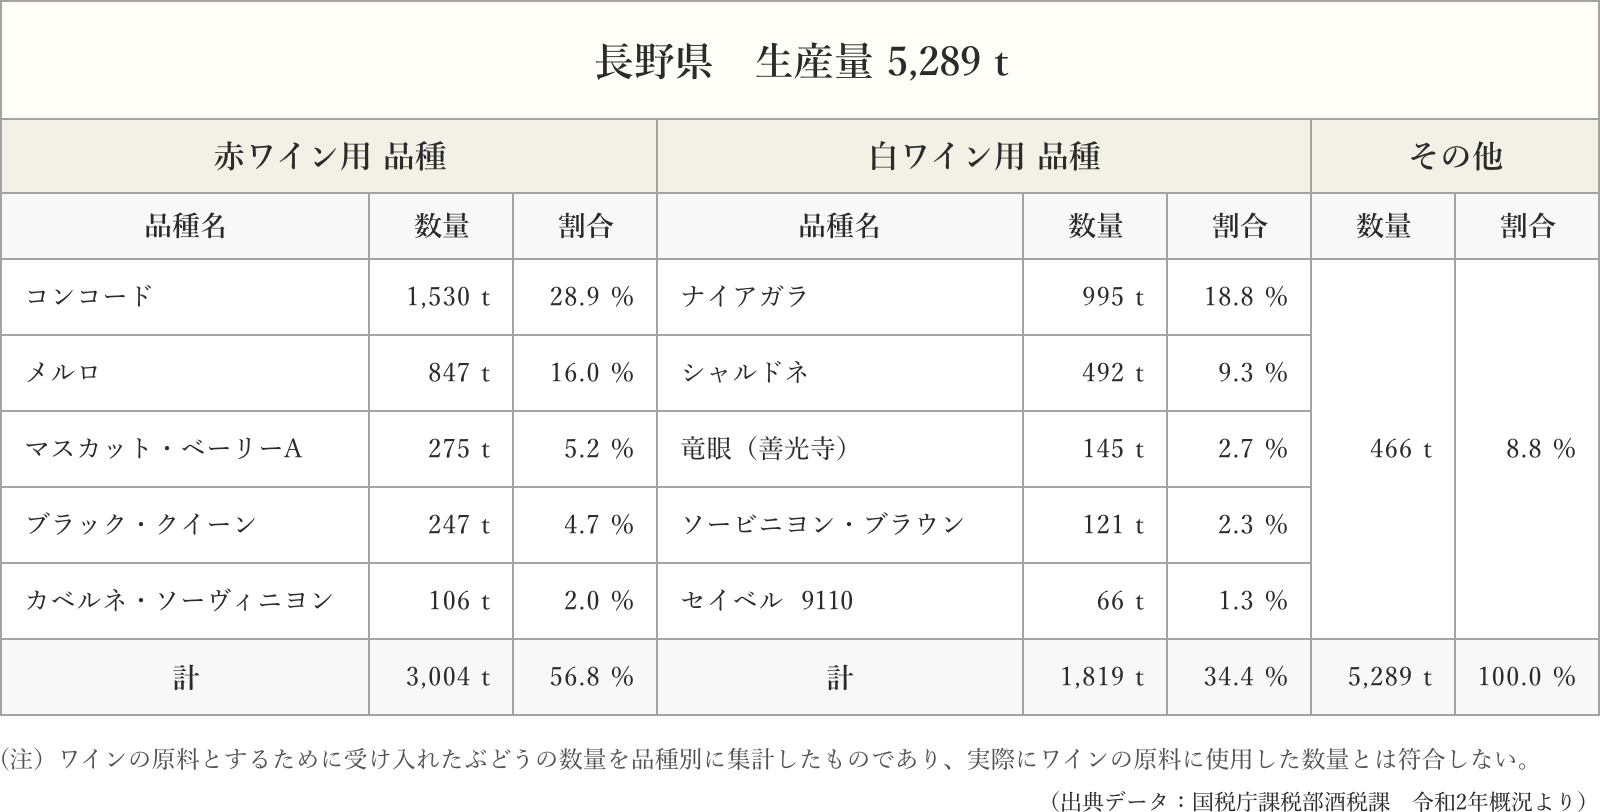 長野県の品種別ぶどう生産量の表